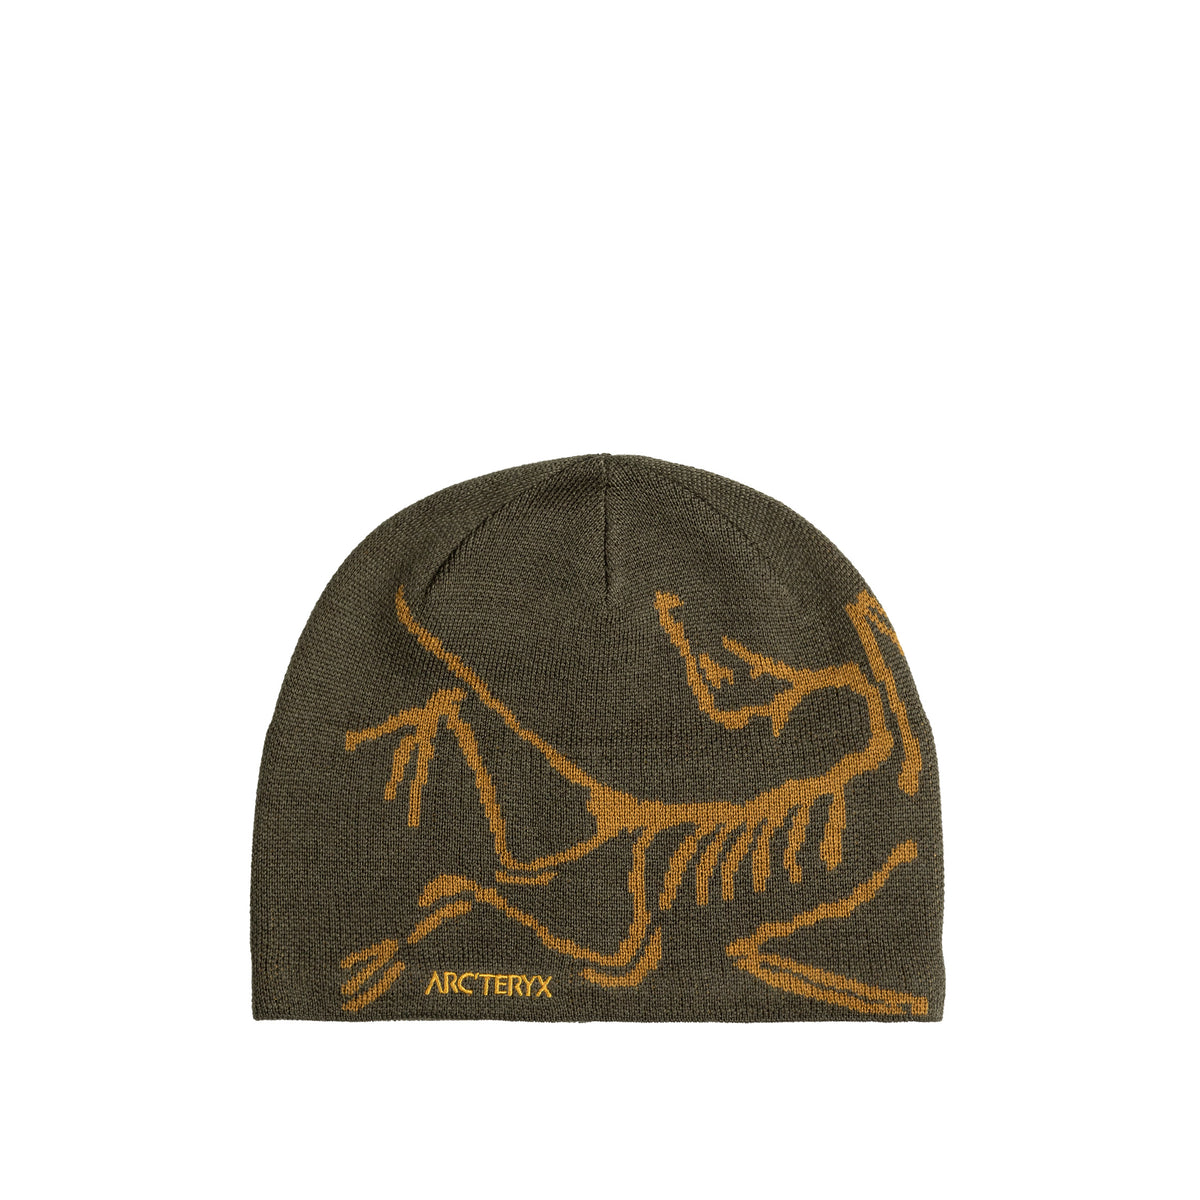 Arcteryx Bird Head Toque » Buy online now!